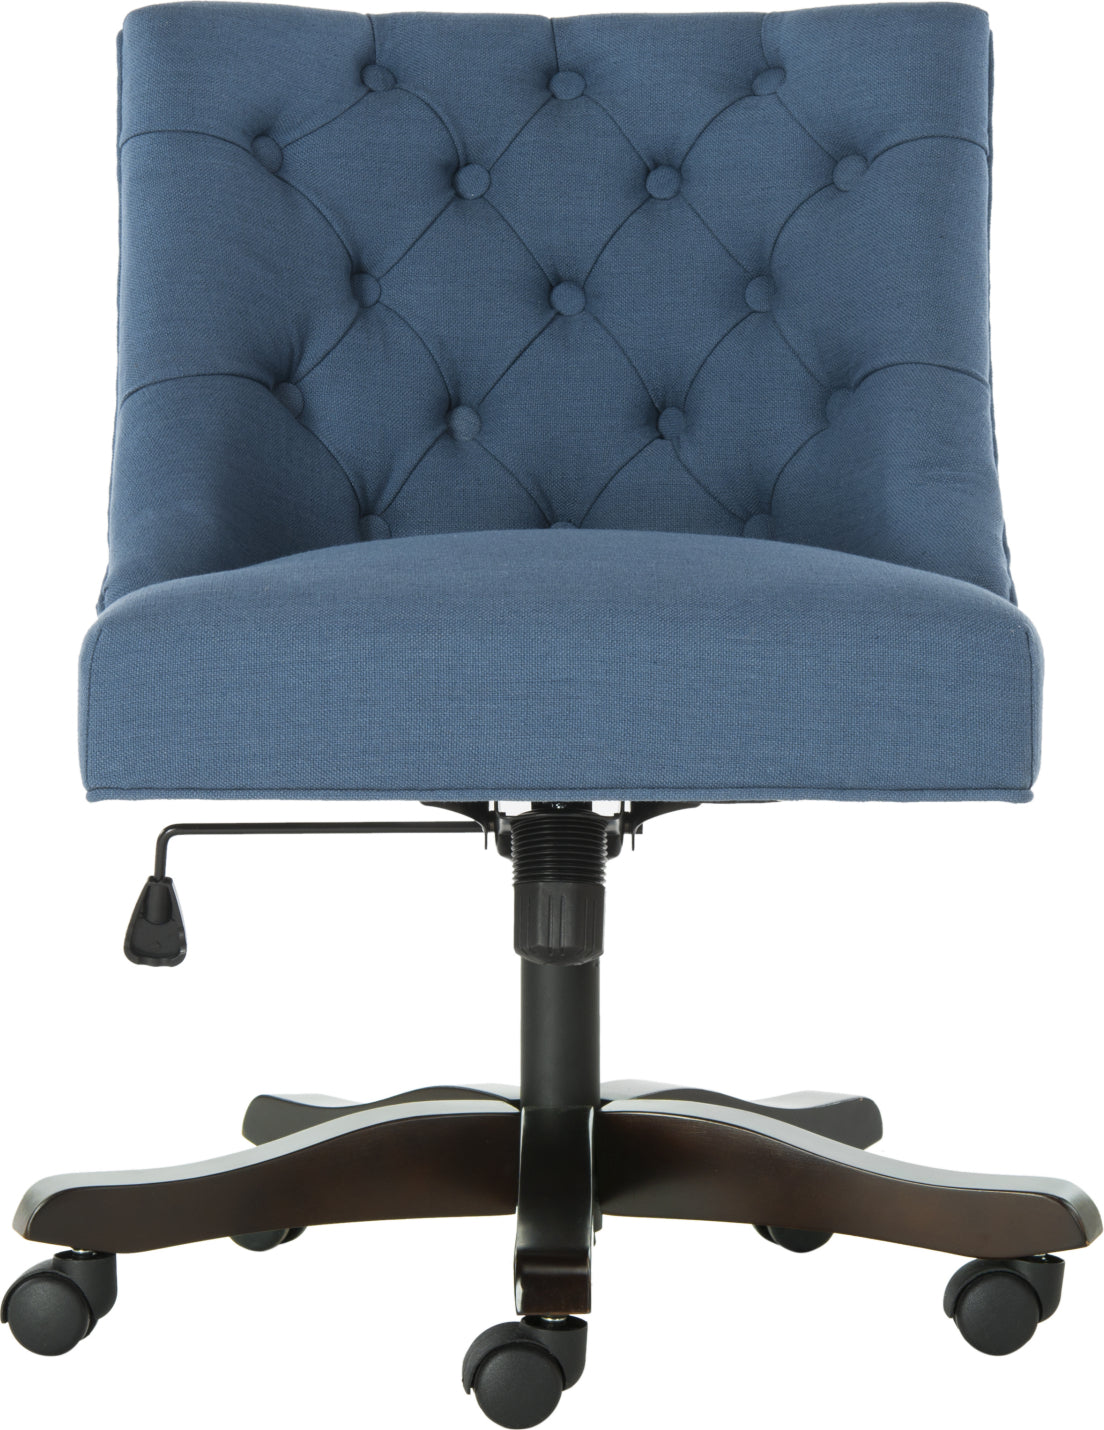 Safavieh Soho Tufted Linen Swivel Desk Chair Navy Furniture main image